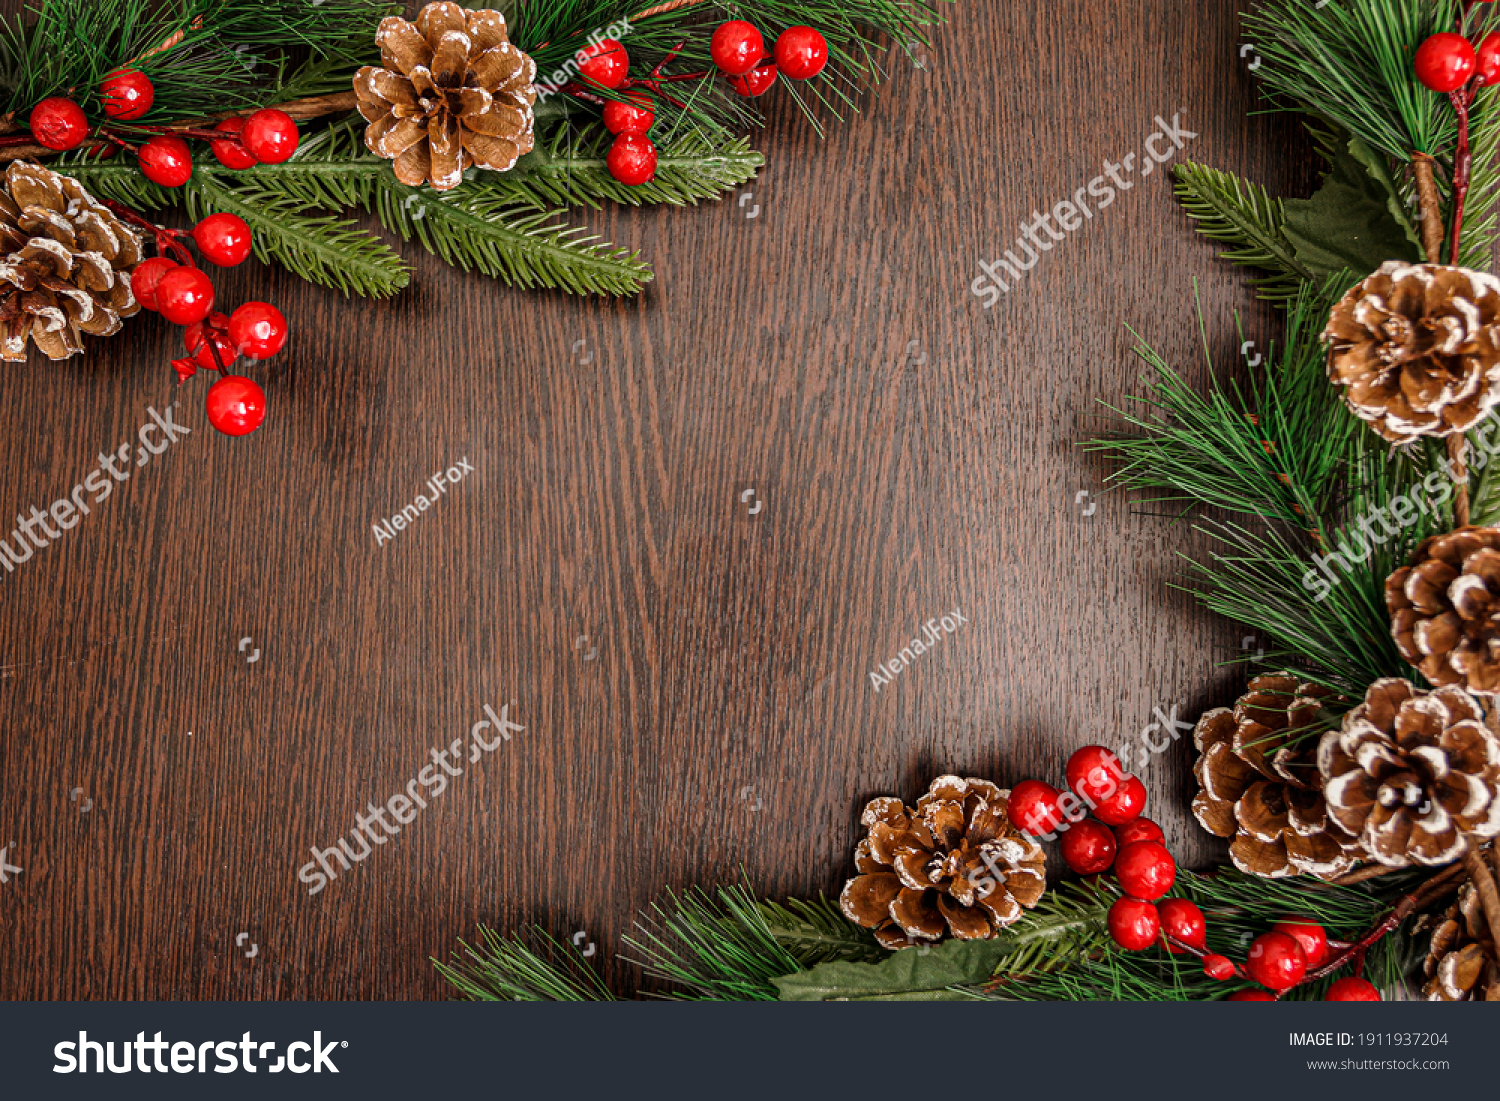 12 813 568 圣诞节背景图片 库存照片和矢量图 Shutterstock